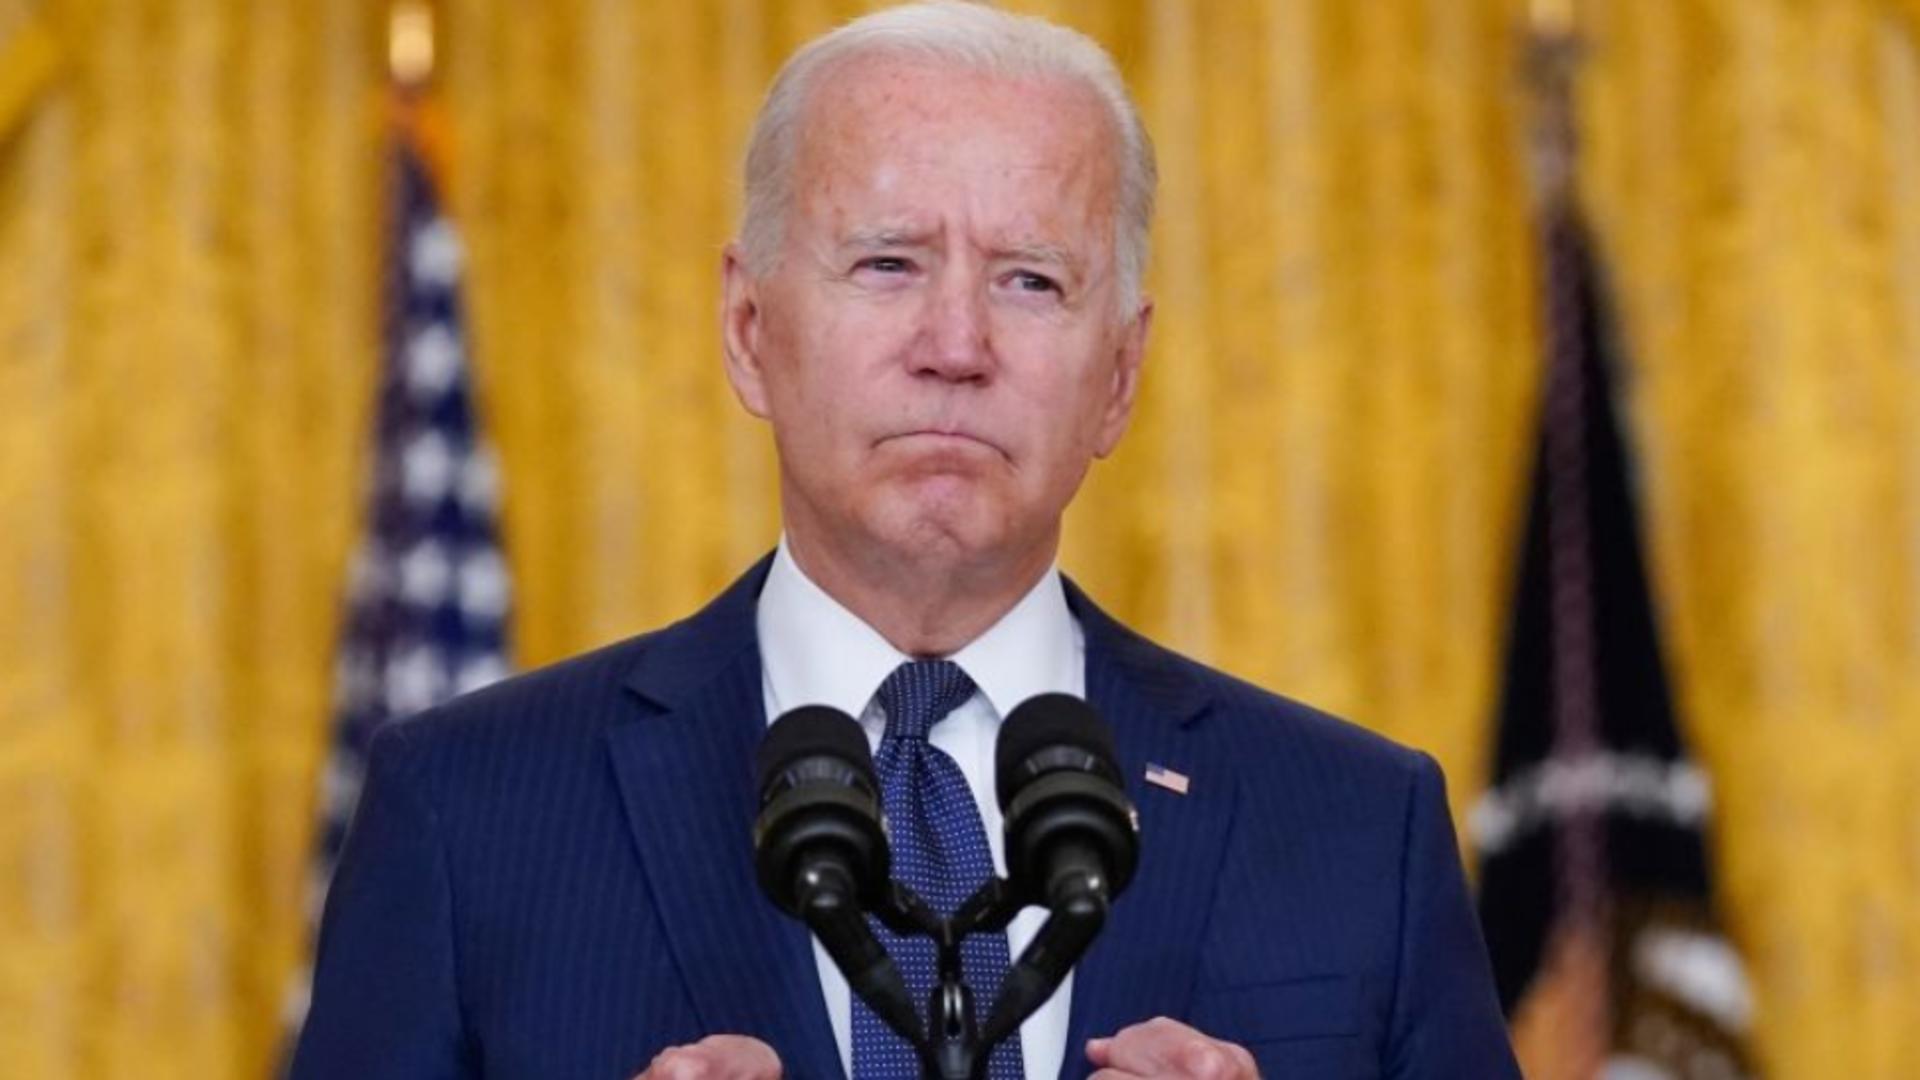  Joe Biden a fost informat despre accidentul aviatic raportat în Rusia - Mesajul Casei Albe